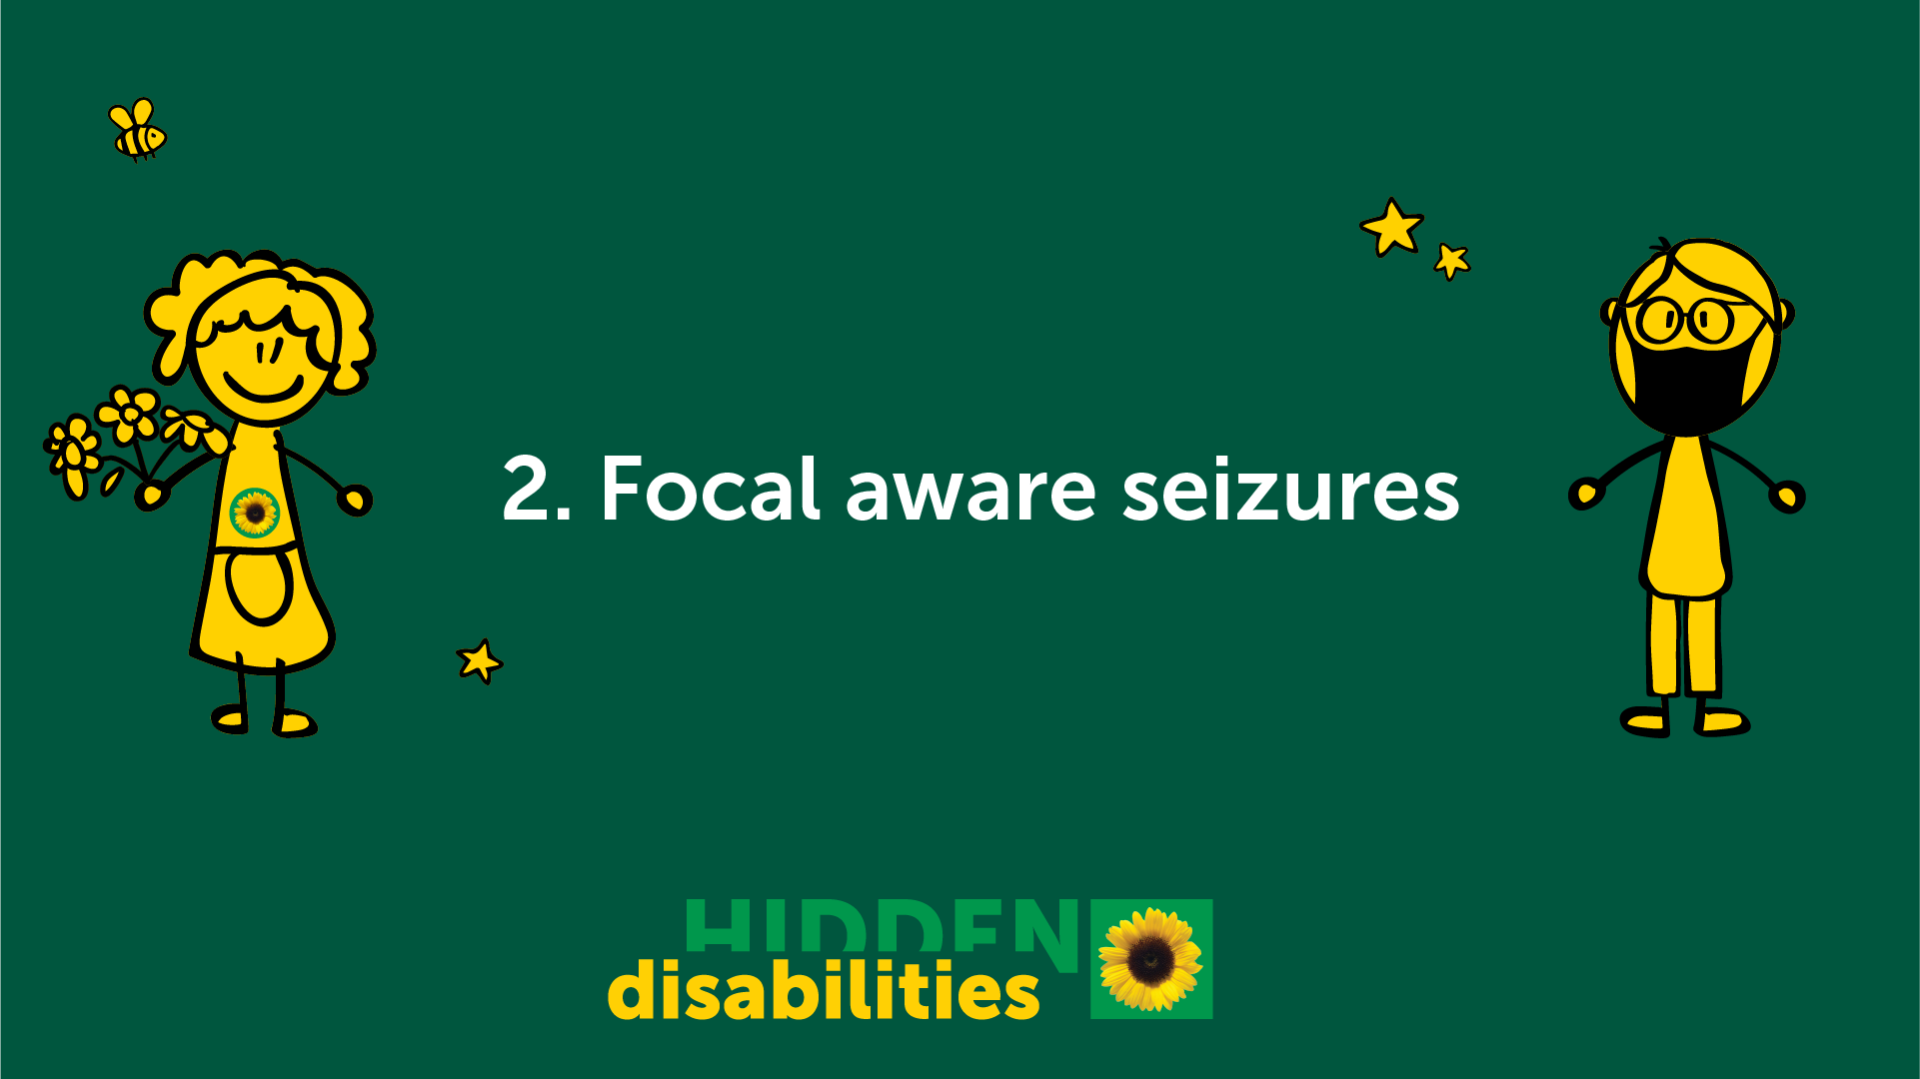 Focal aware seizures